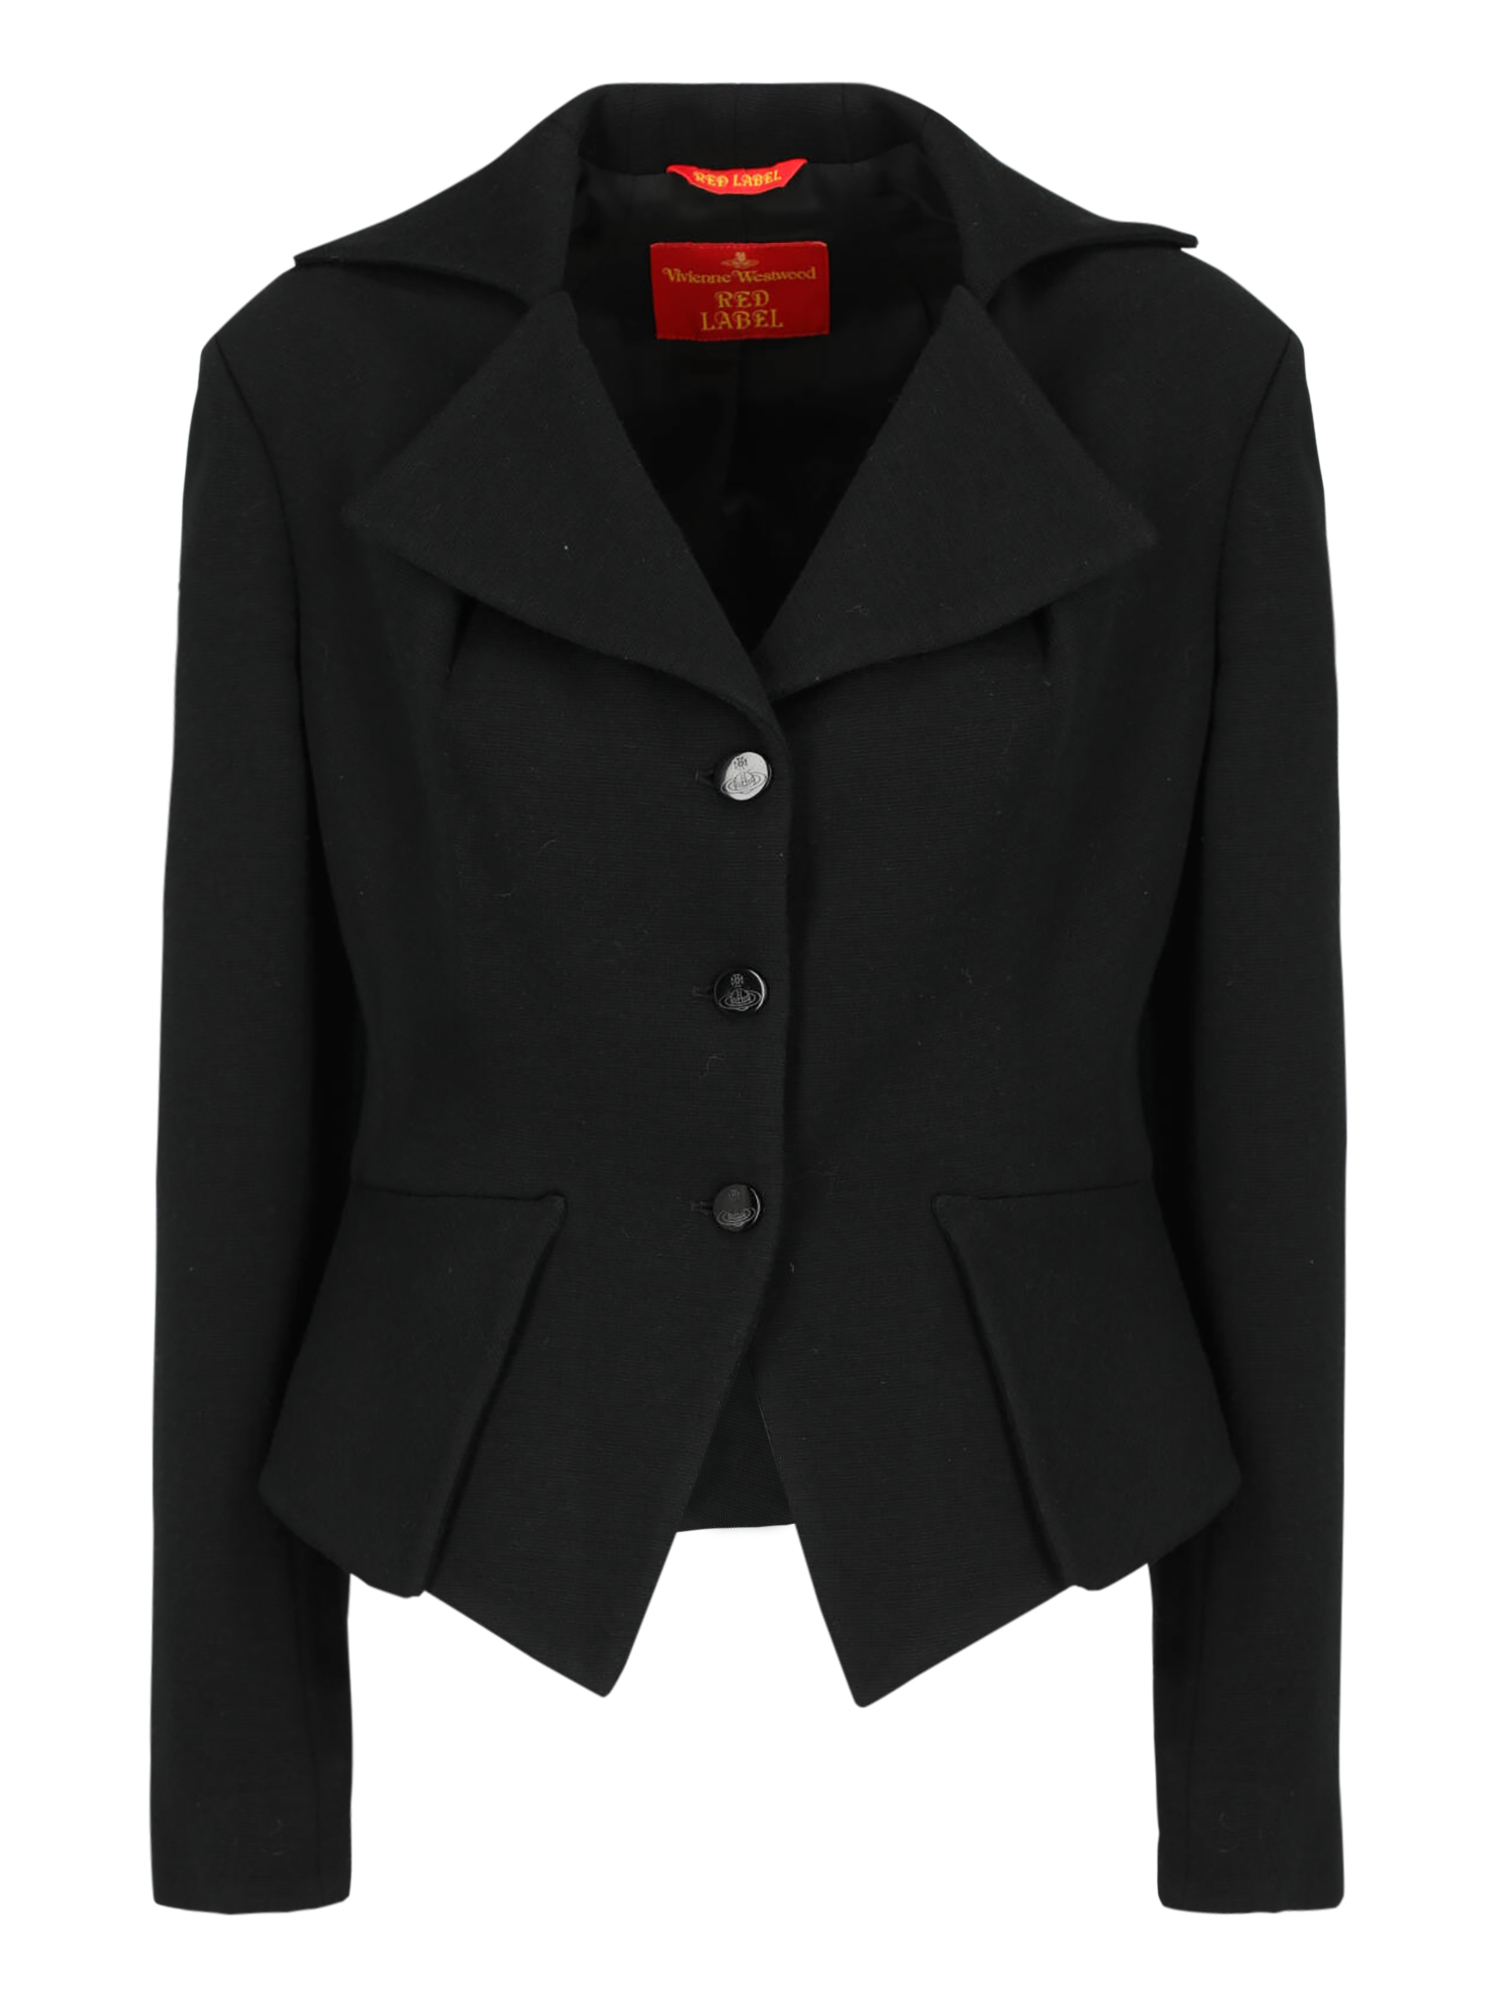 Vestes Pour Femme - Vivienne Westwood Red Label - En Wool Black - Taille:  -